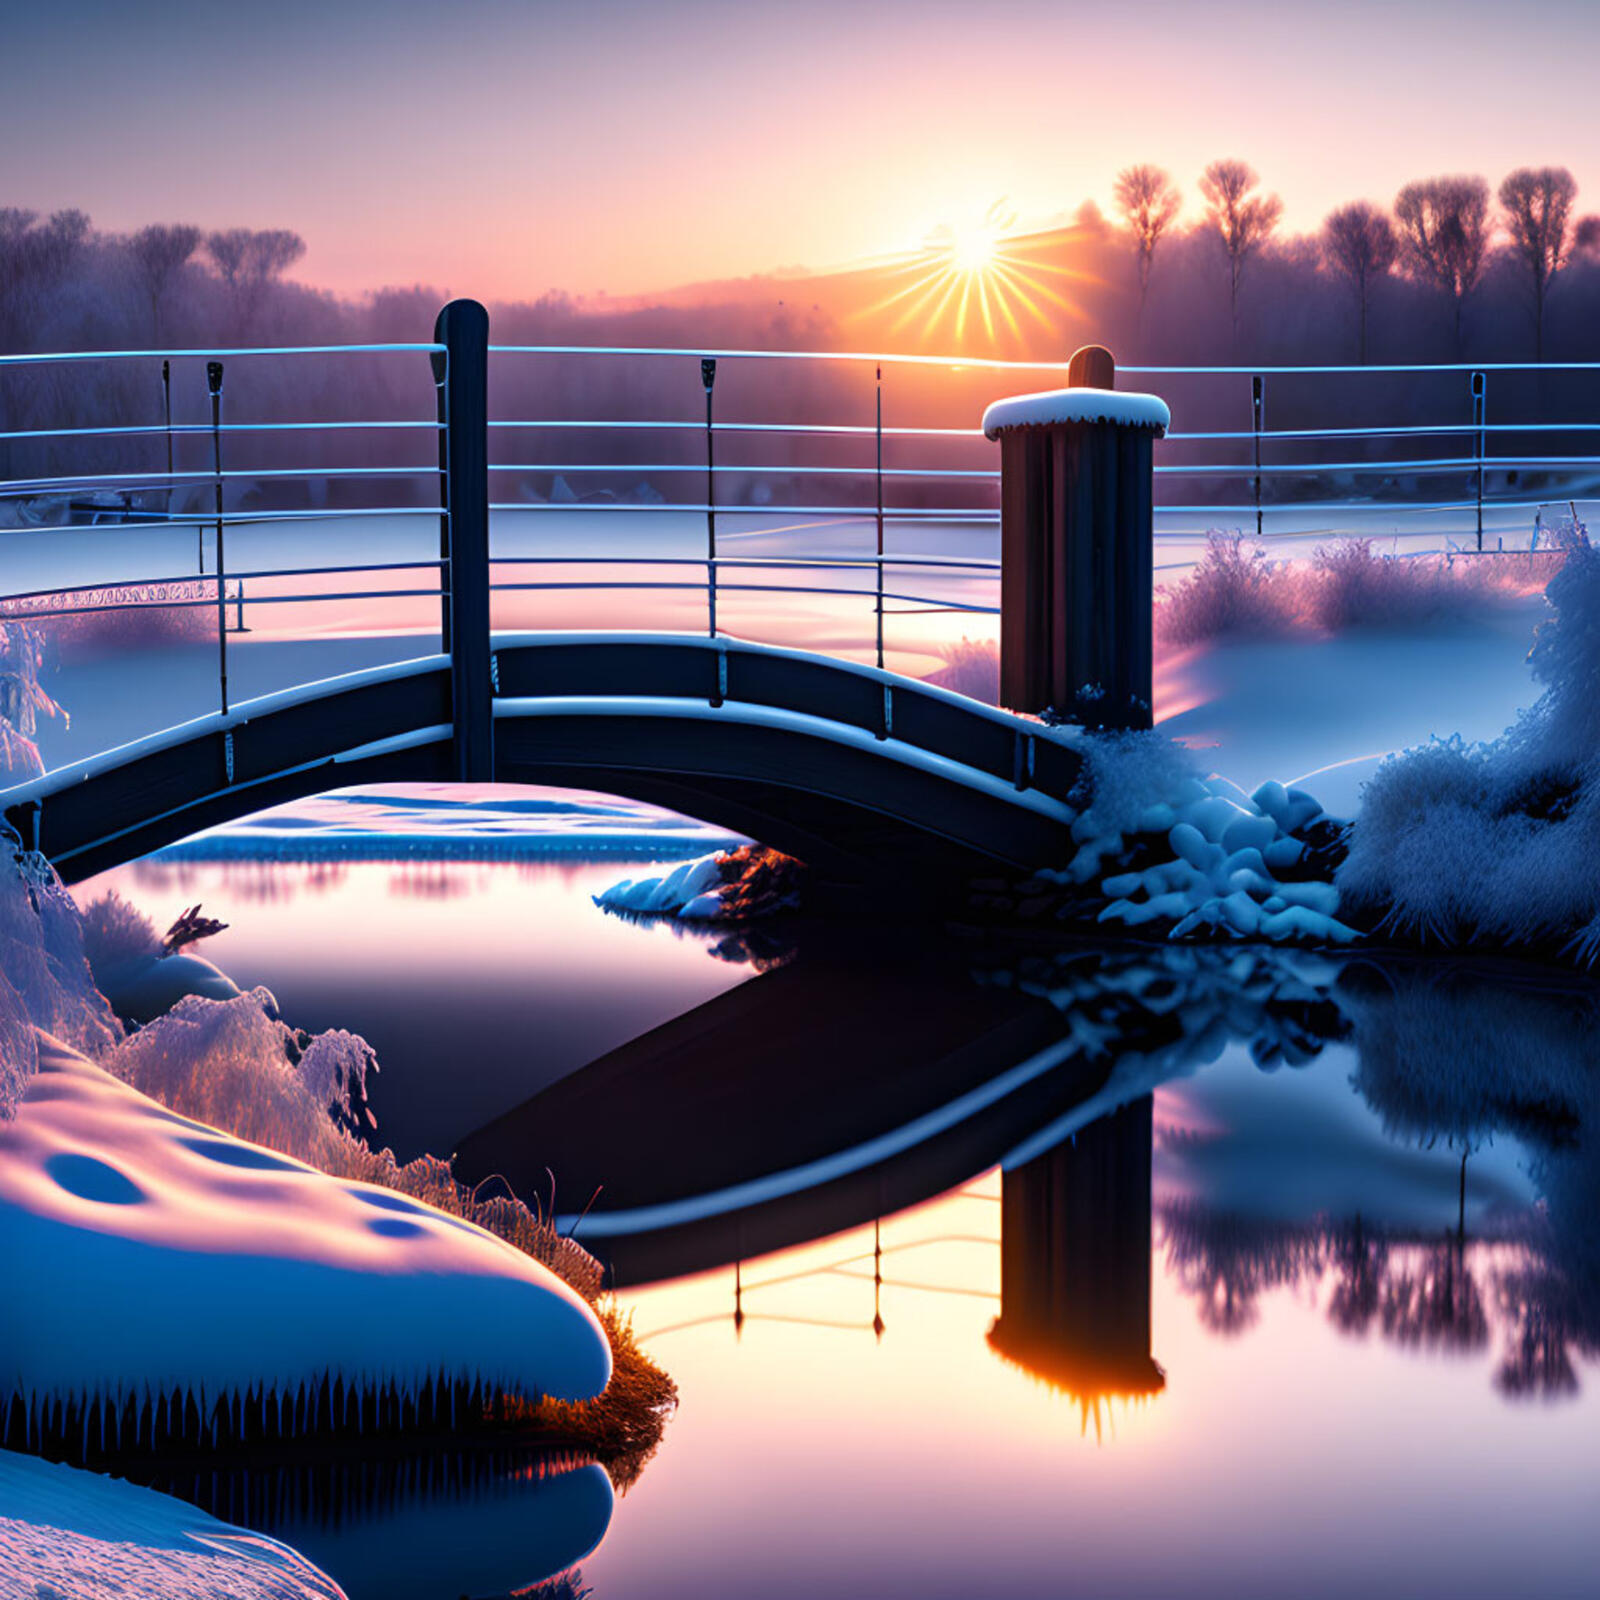 Бесплатное фото Фантастический рассвет над рекой с мостом в морозное зимнее снежное утро